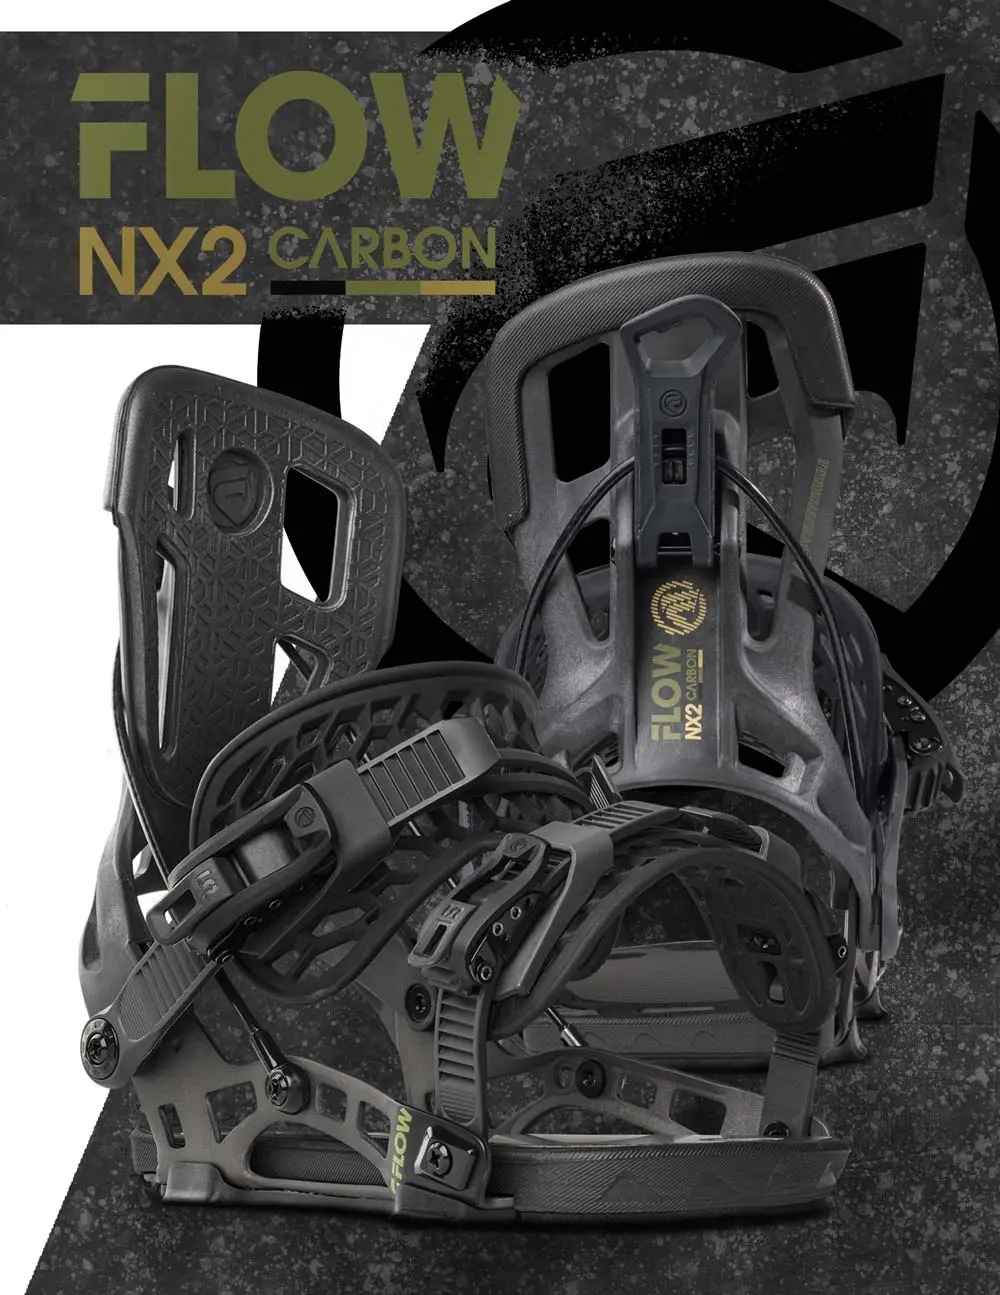 NX2 Carbon